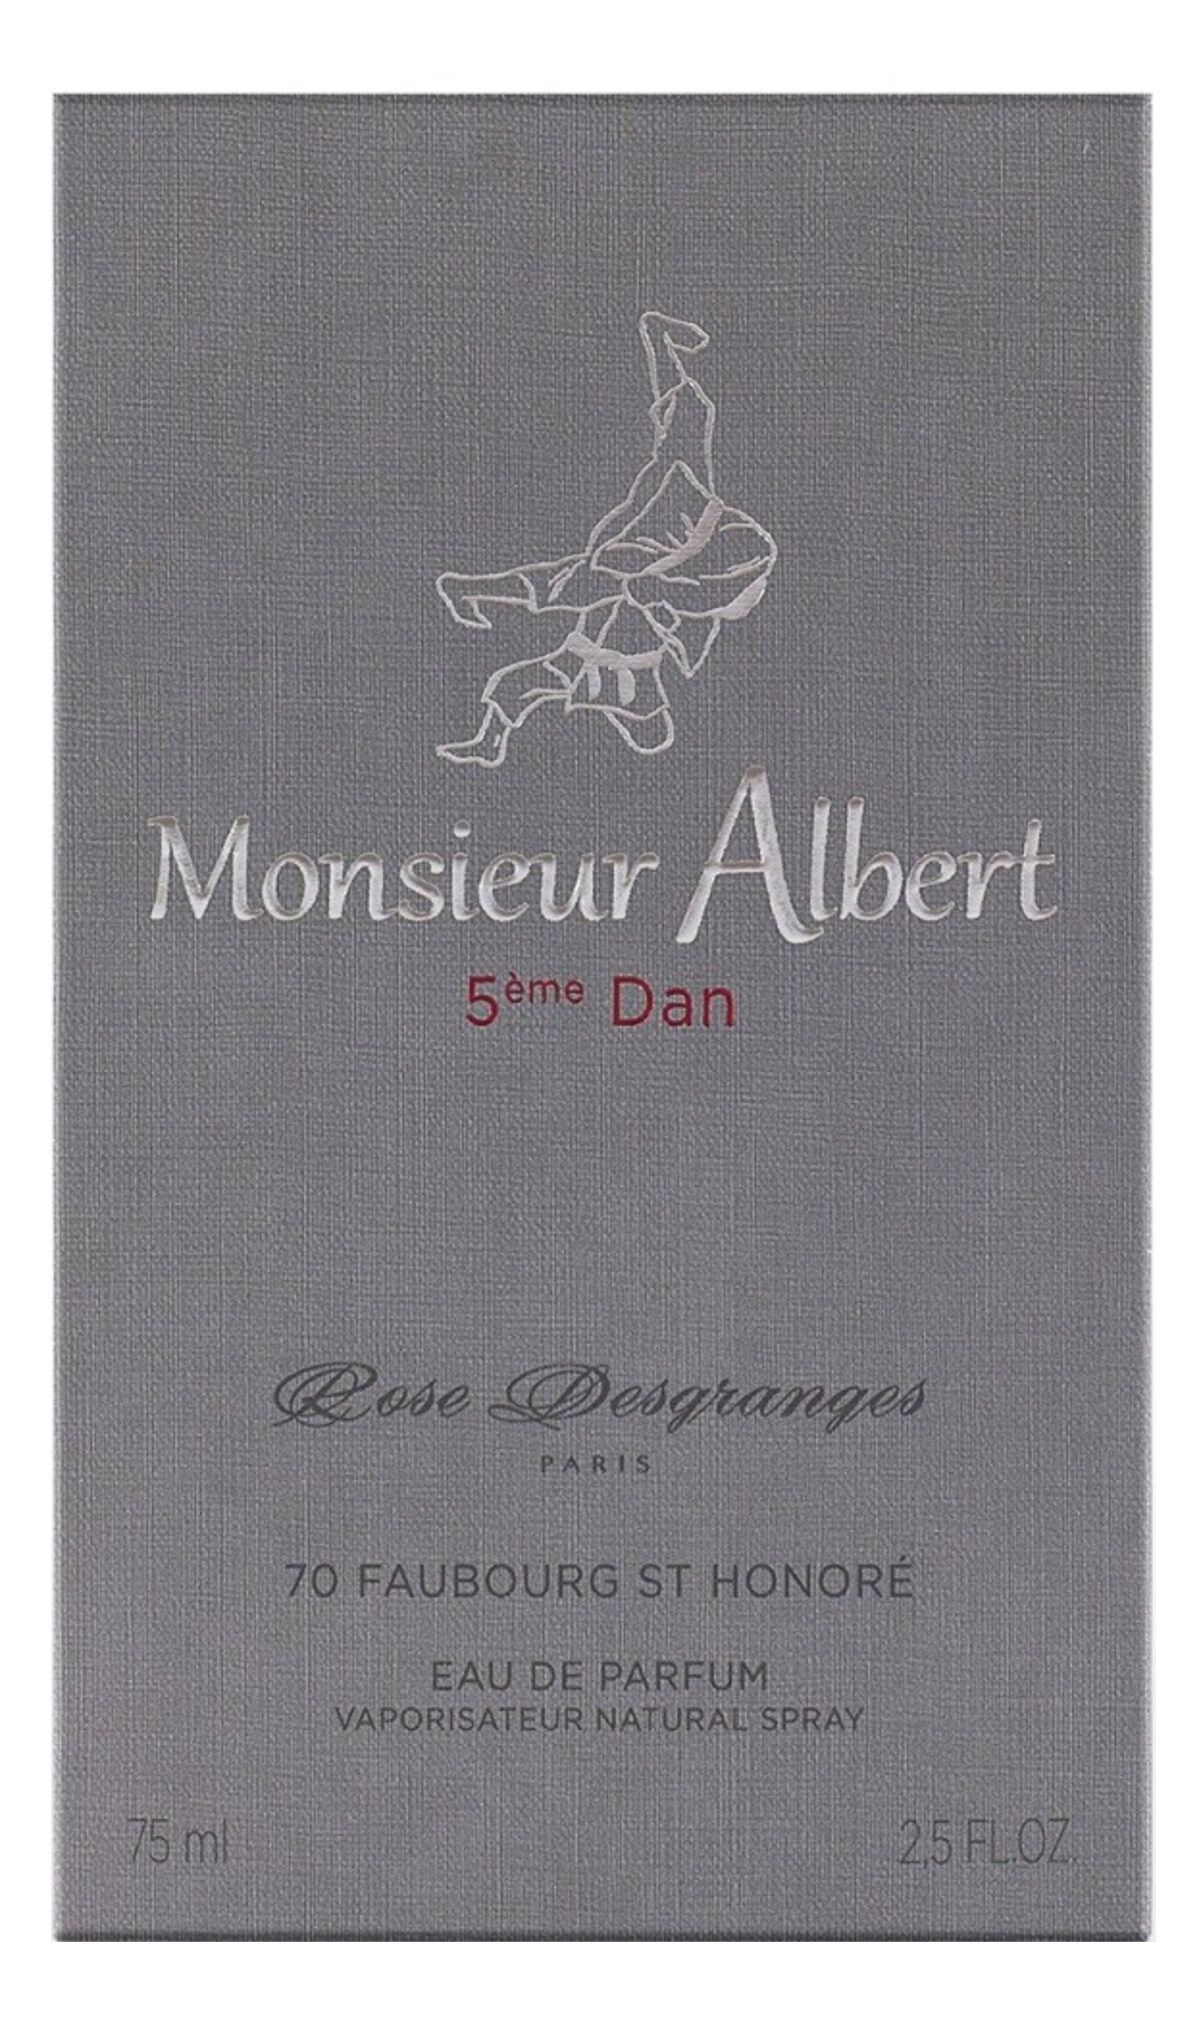 Monsieur Albert 5ème Dan - Rose Desgranges - Gallery 2